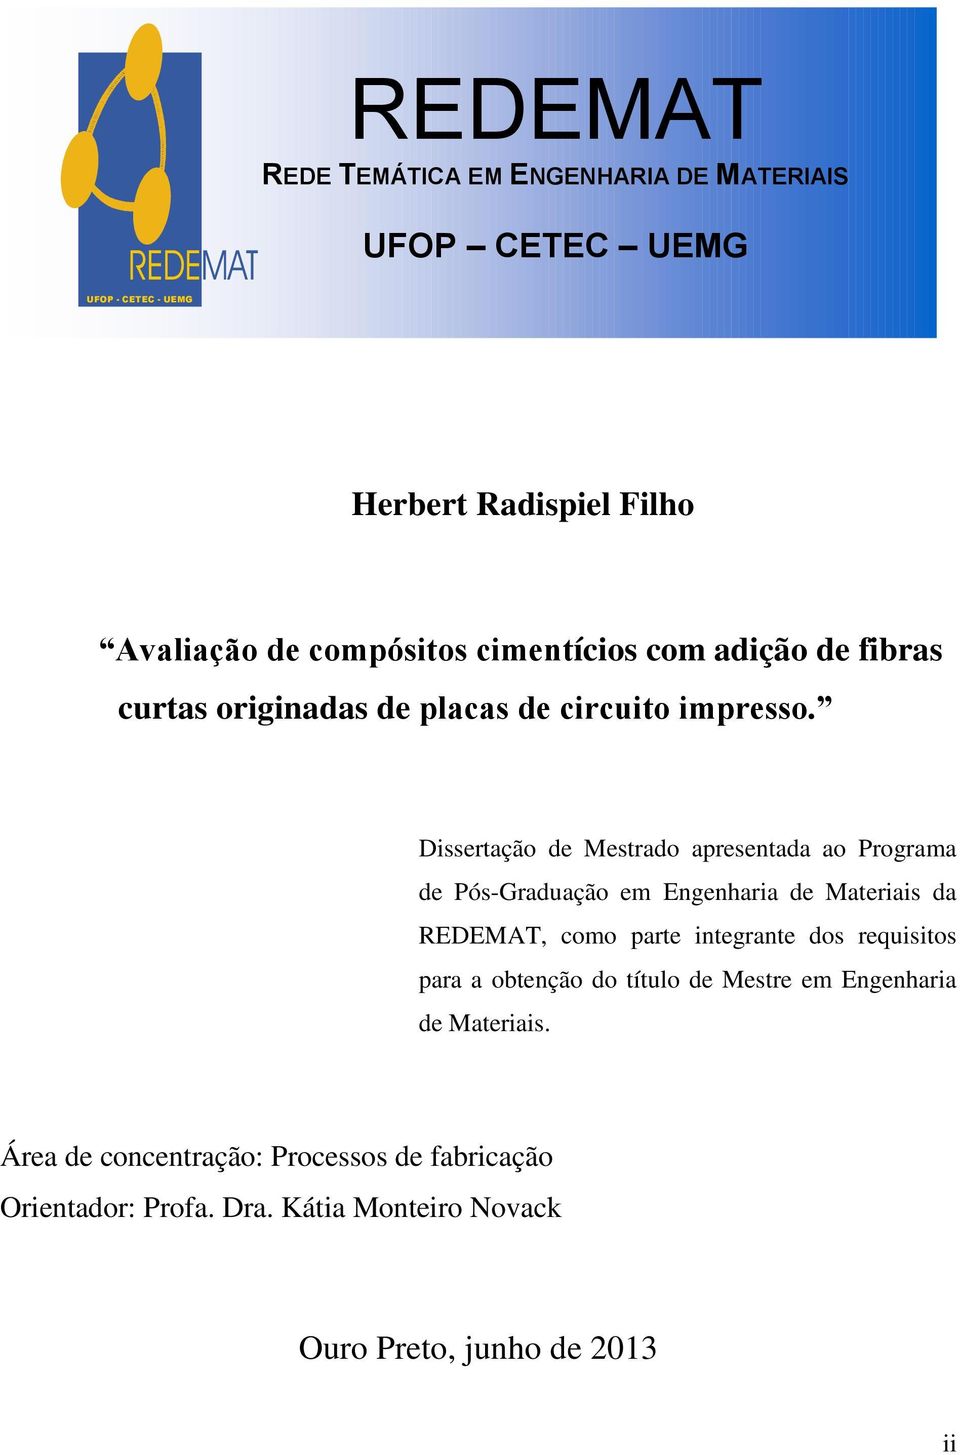 Dissertação de Mestrado apresentada ao Programa de Pós-Graduação em Engenharia de Materiais da REDEMAT, como parte integrante dos